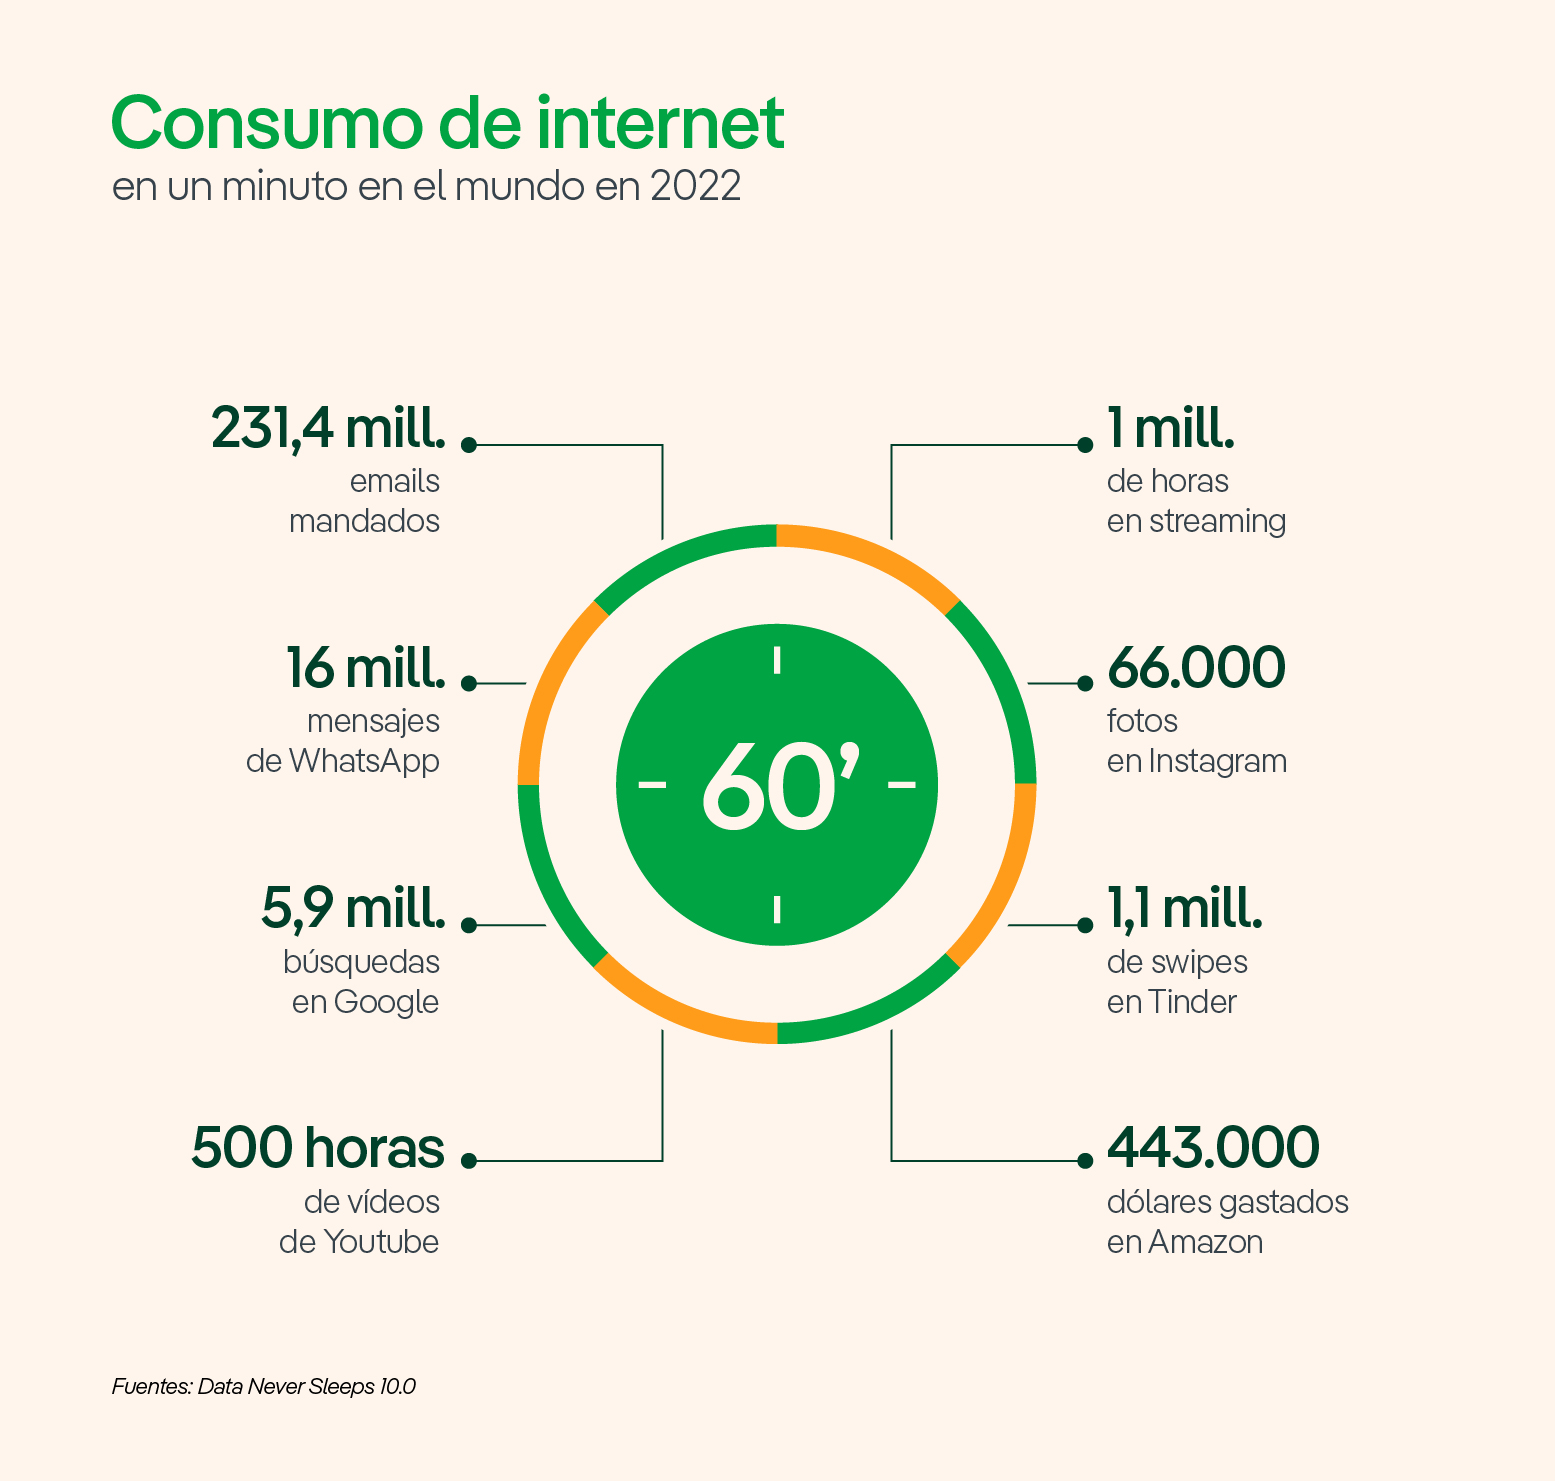 Consumo de internet en un minuto en el mundo